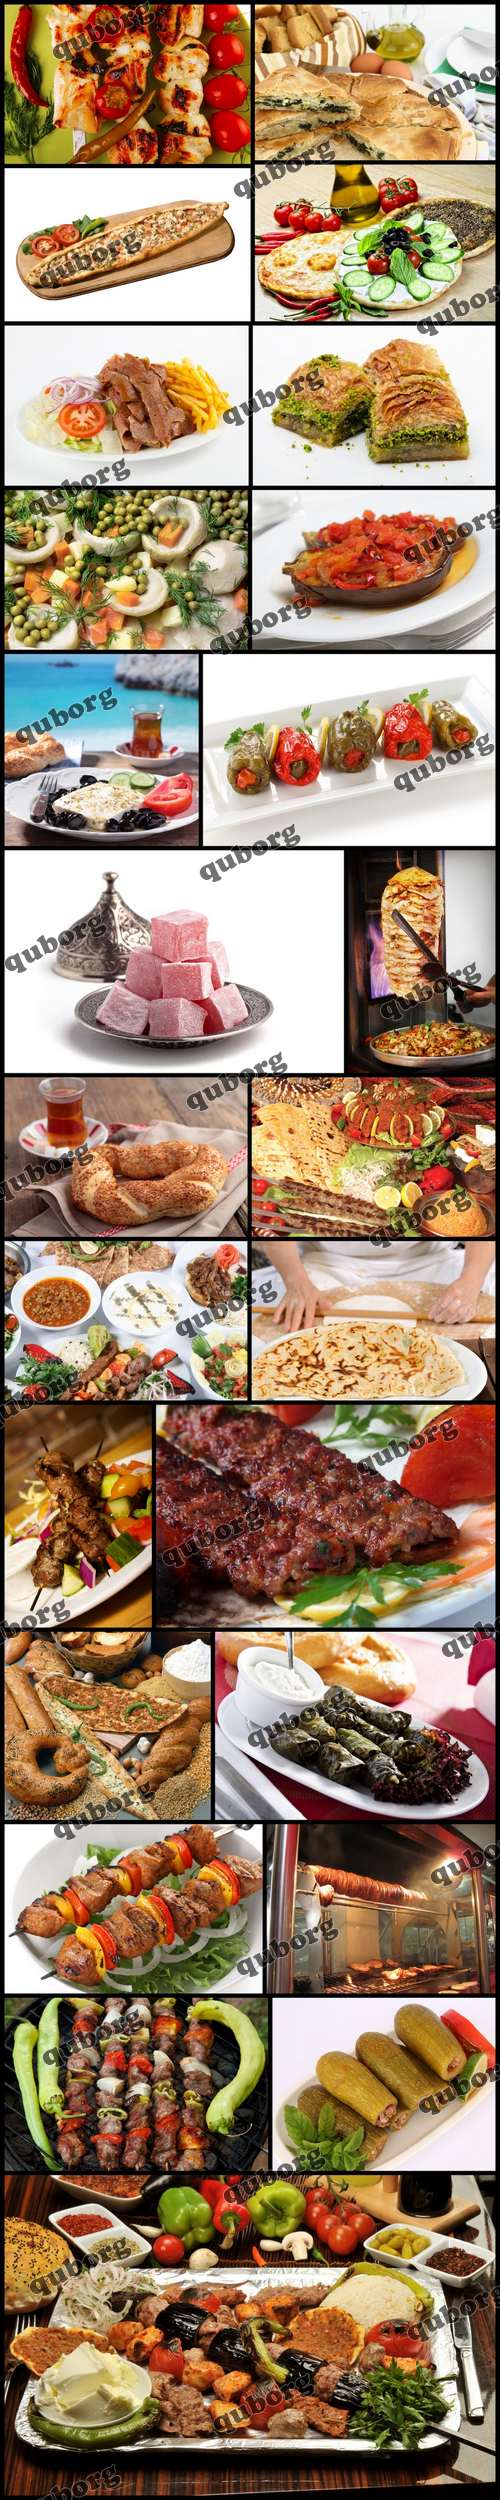 Stock Photos - Turkish Food